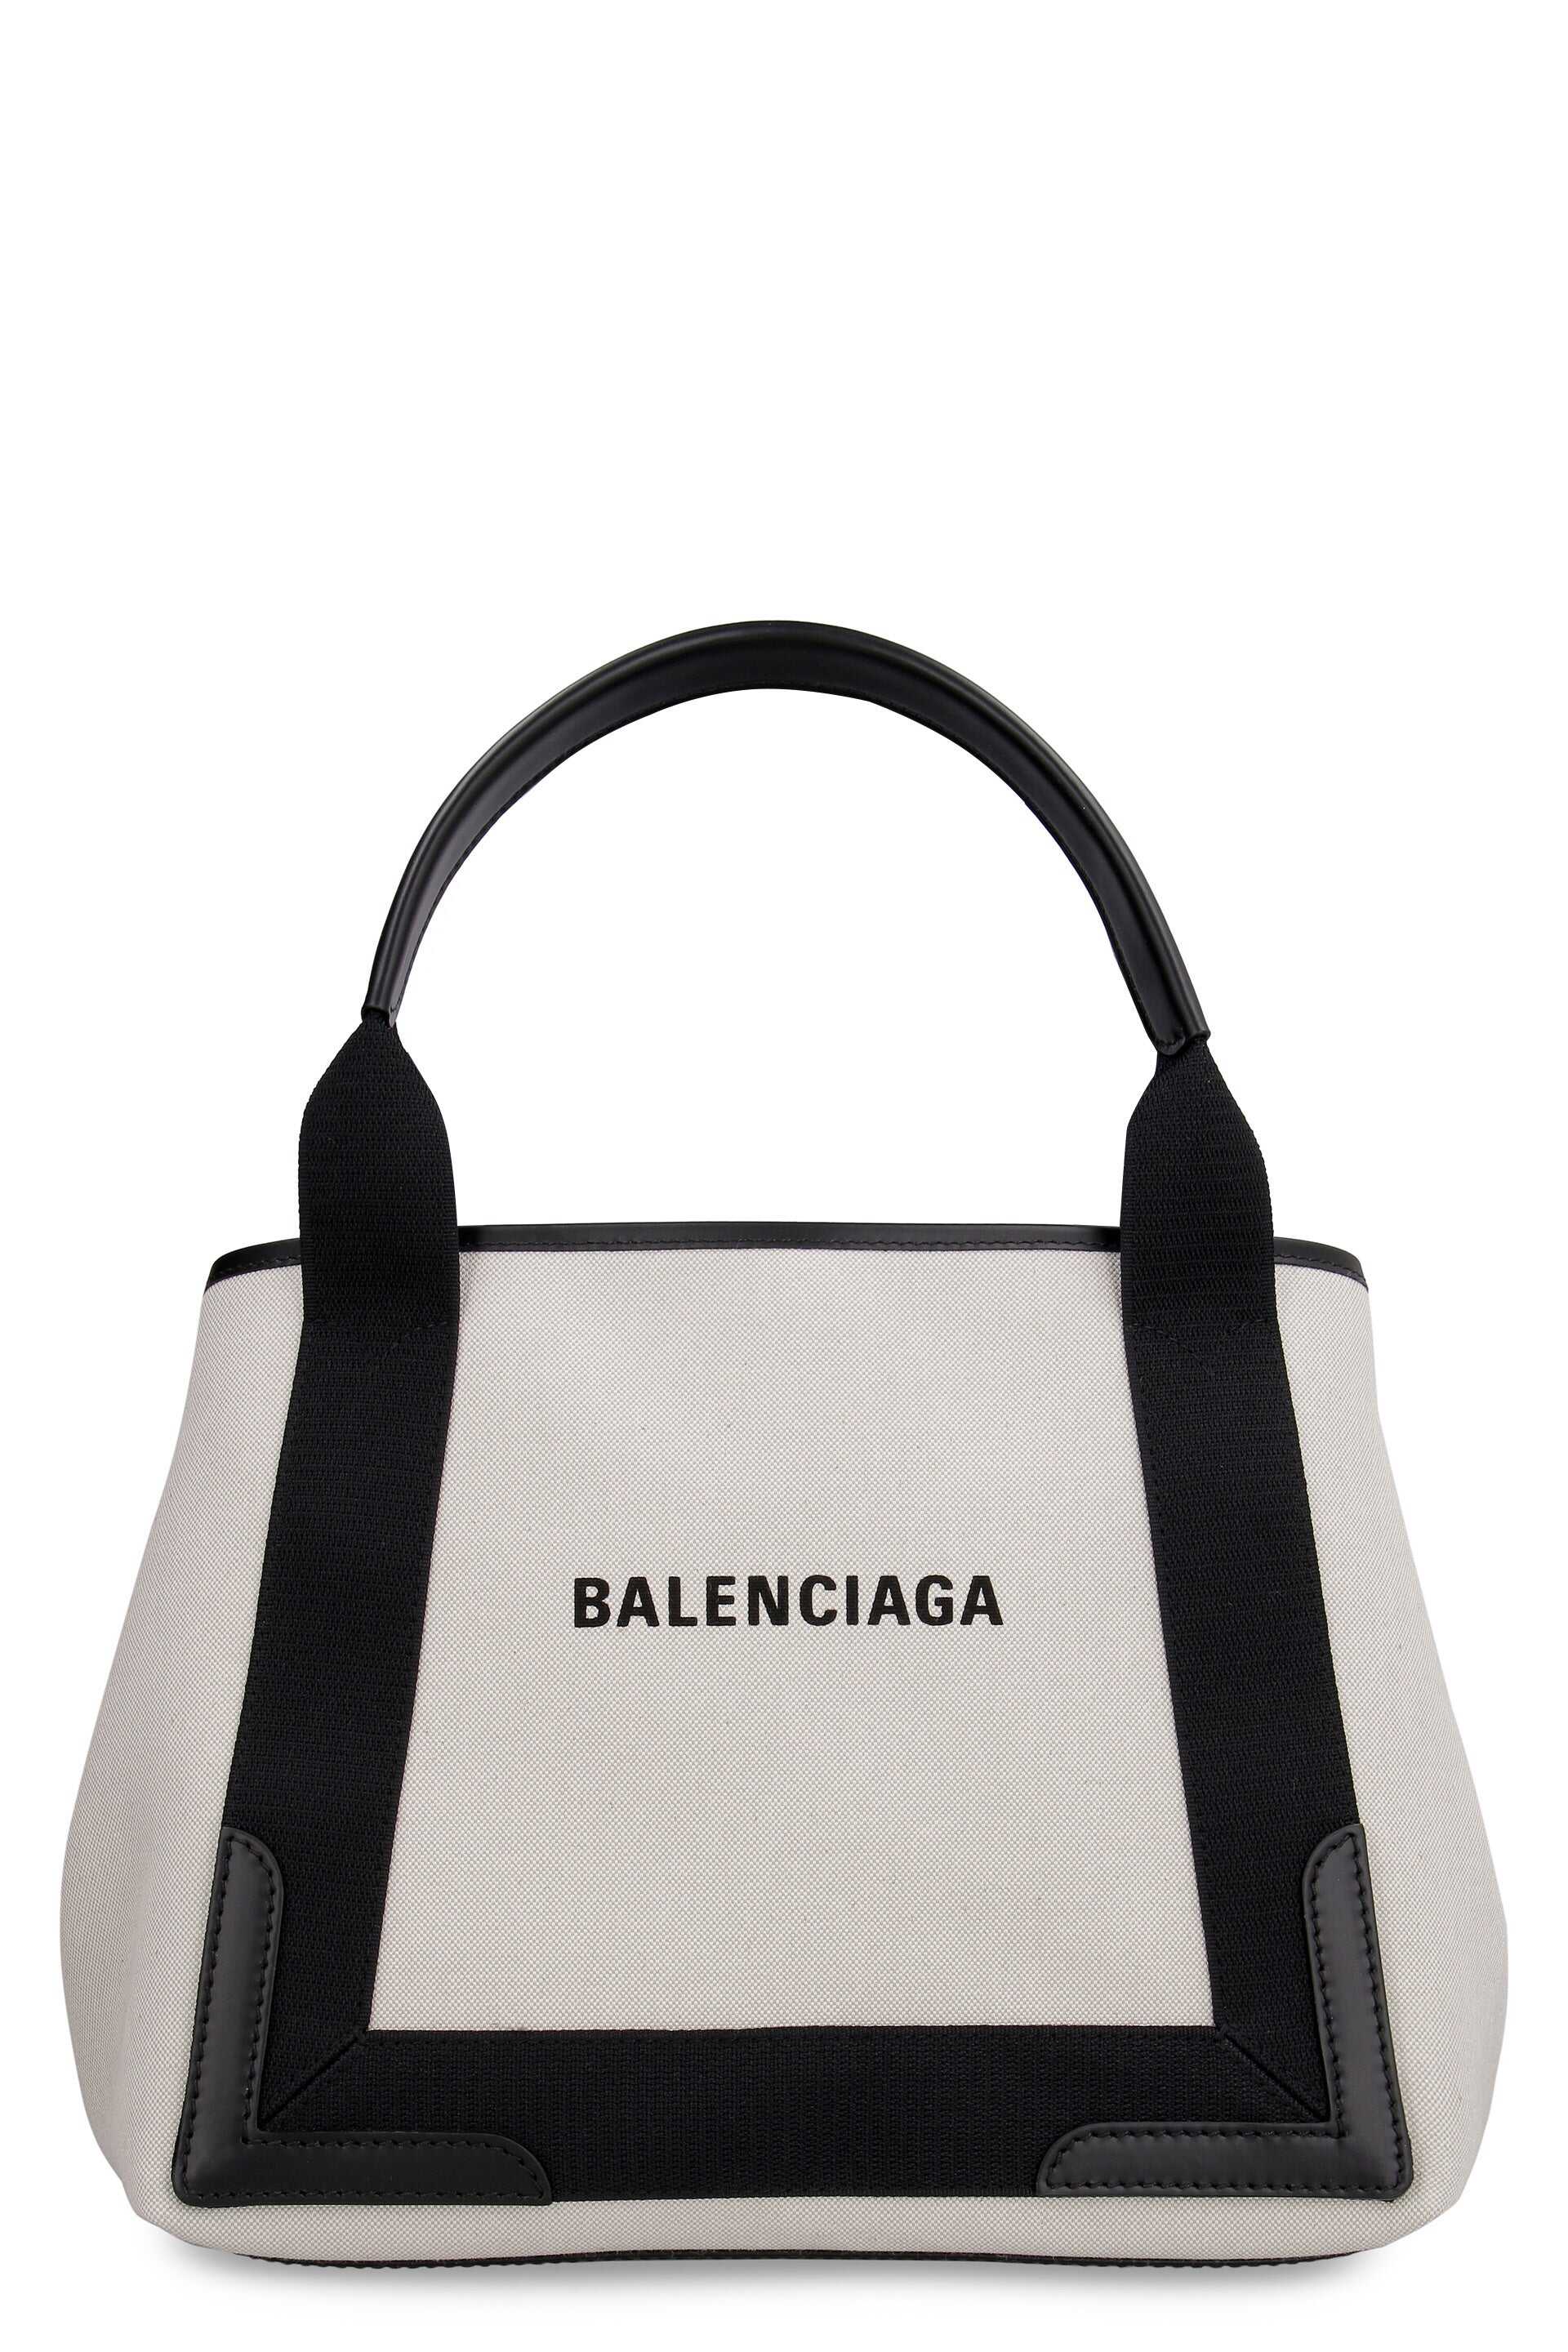 Balenciaga BALENCIAGA CABAS CANVAS TOTE BAG PANNA